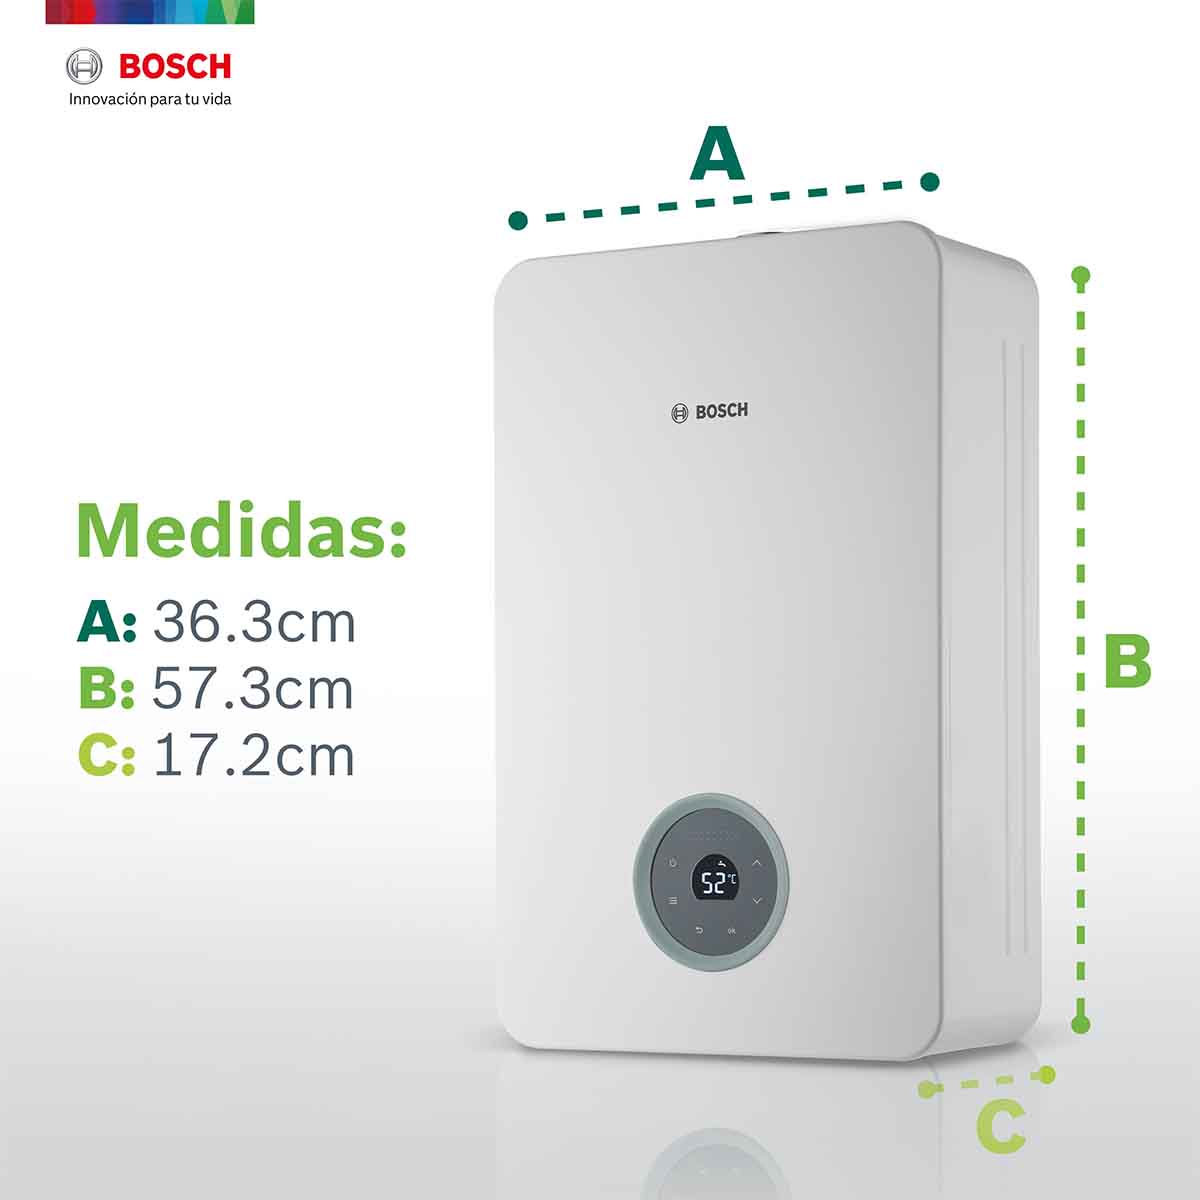 Calentador Paso Wifi 4 Servicios Plus Balanz Vento 24 Gas Lp Bosch